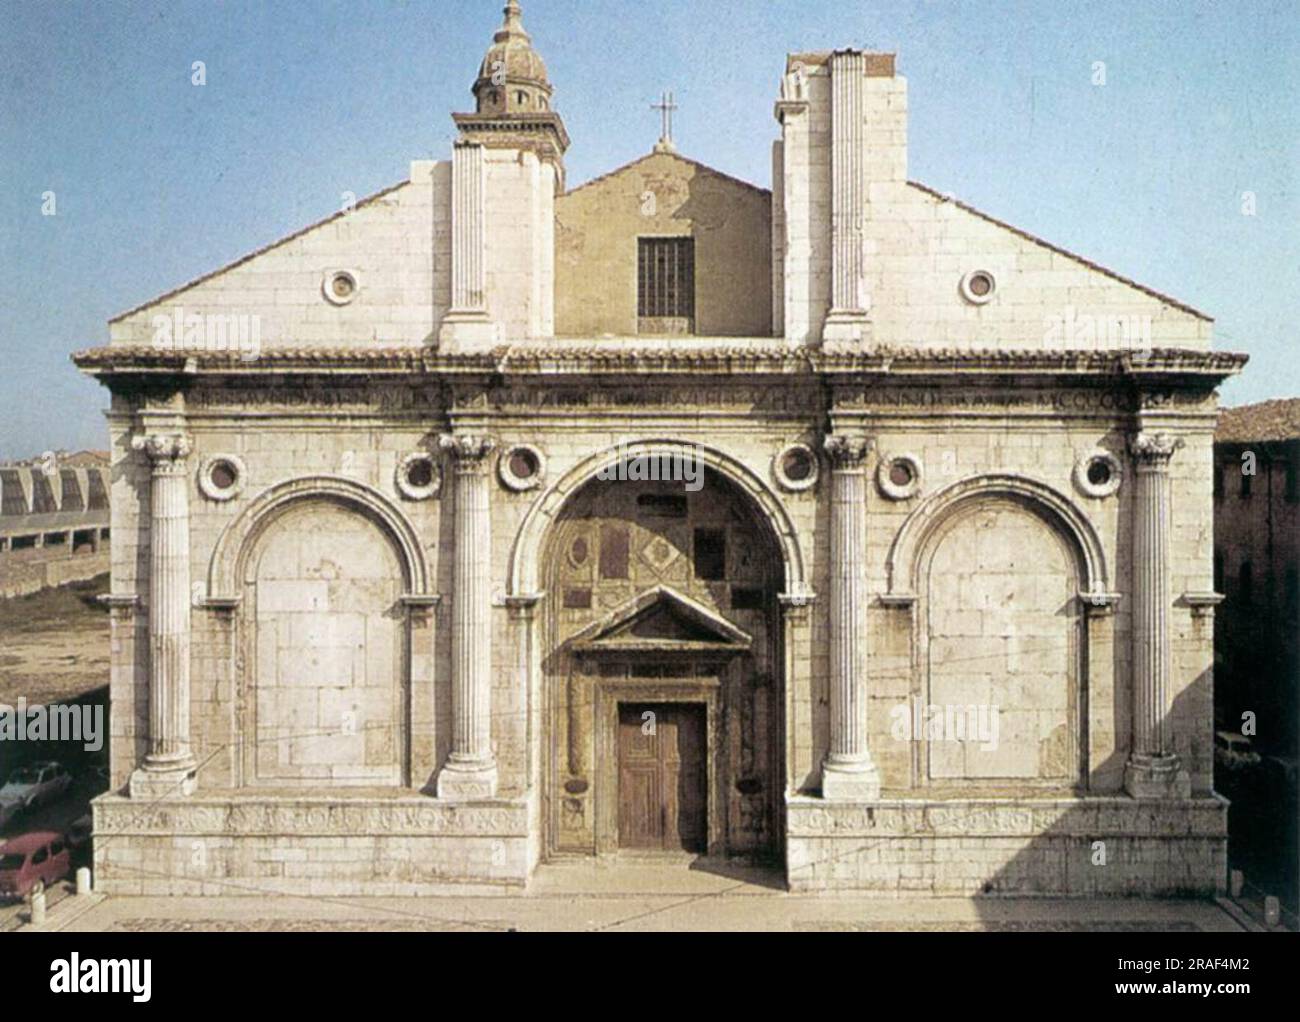 Tempio Malatestiano (Rimini) 1450 by Leon Battista Alberti Stock Photo